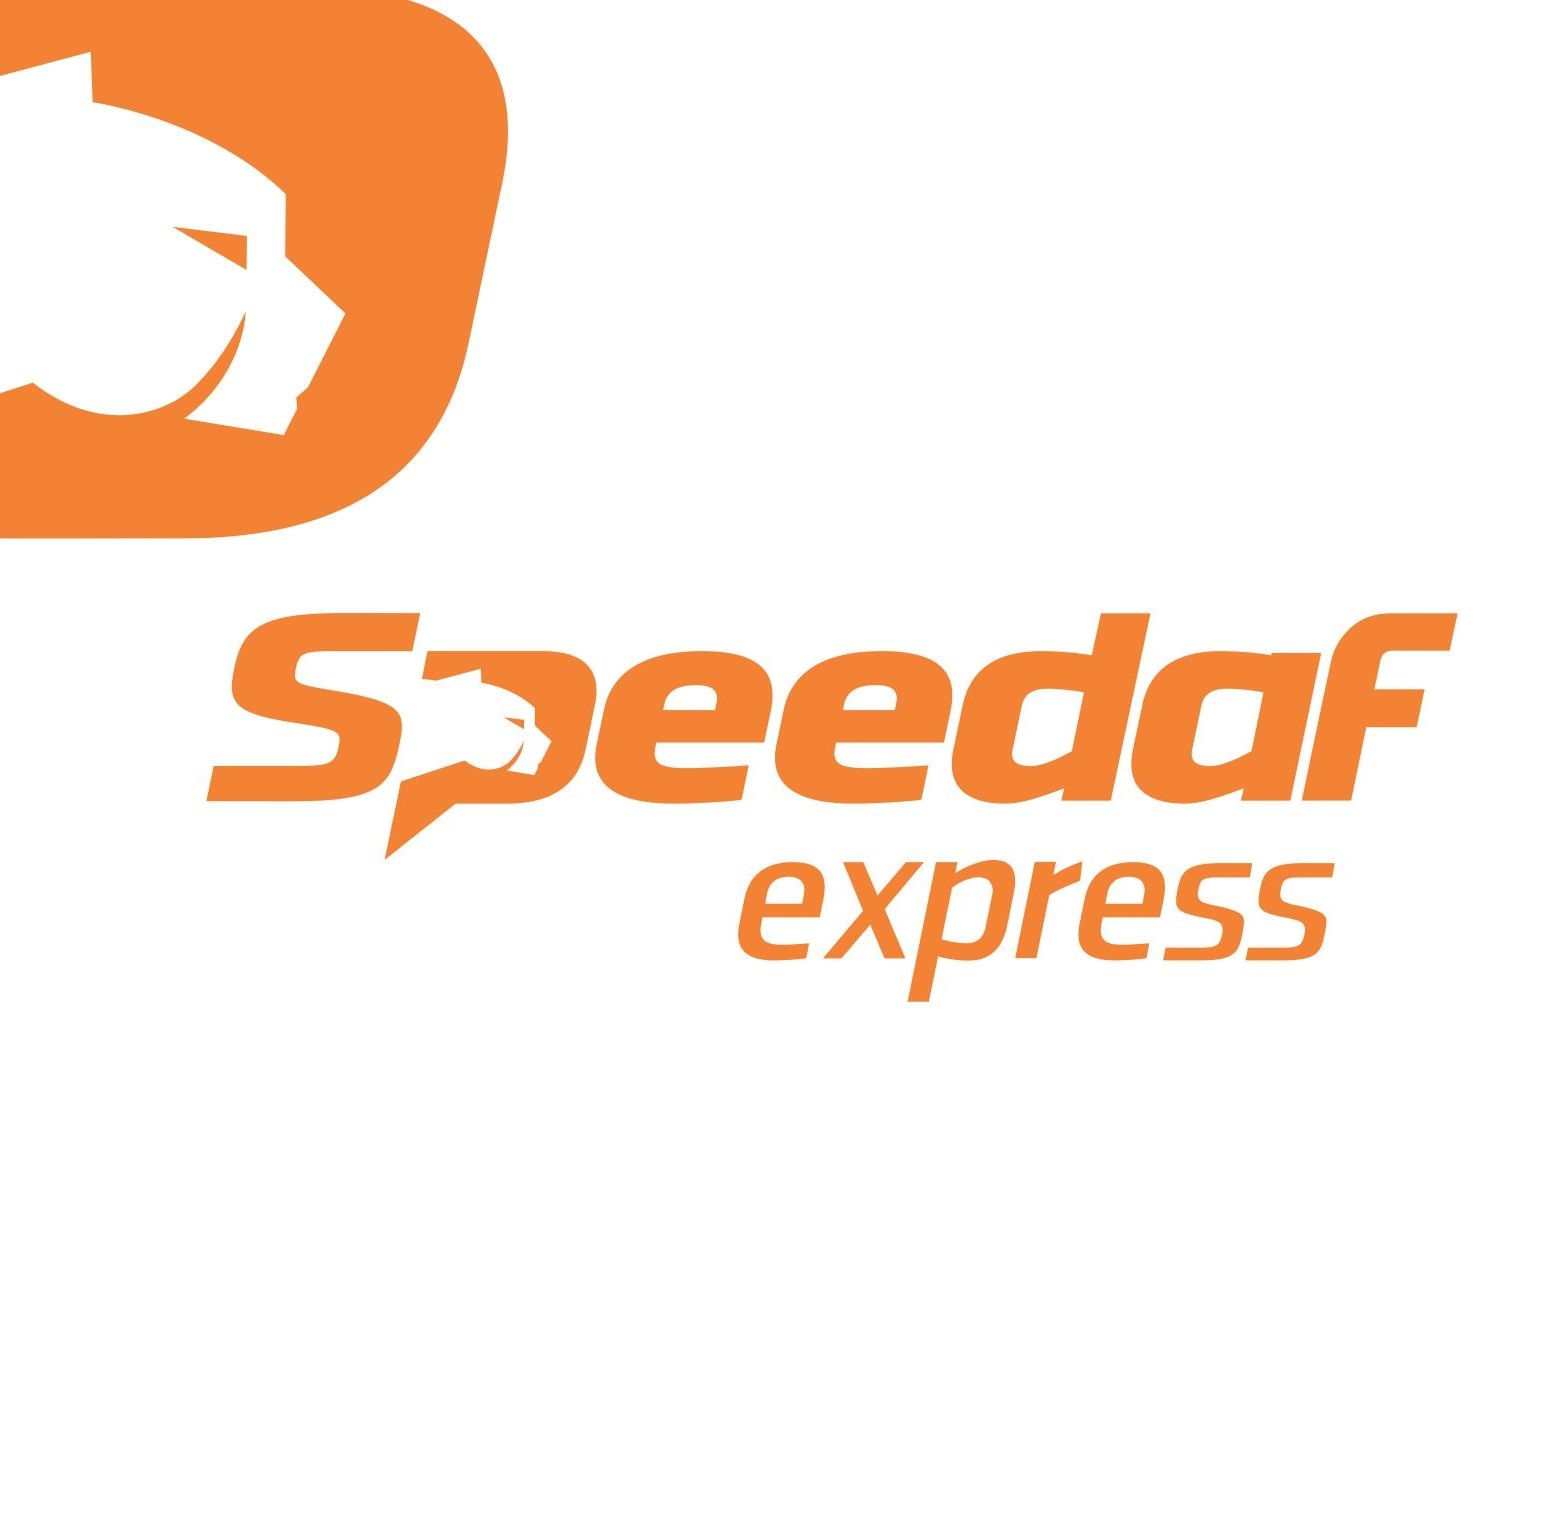 speedaf